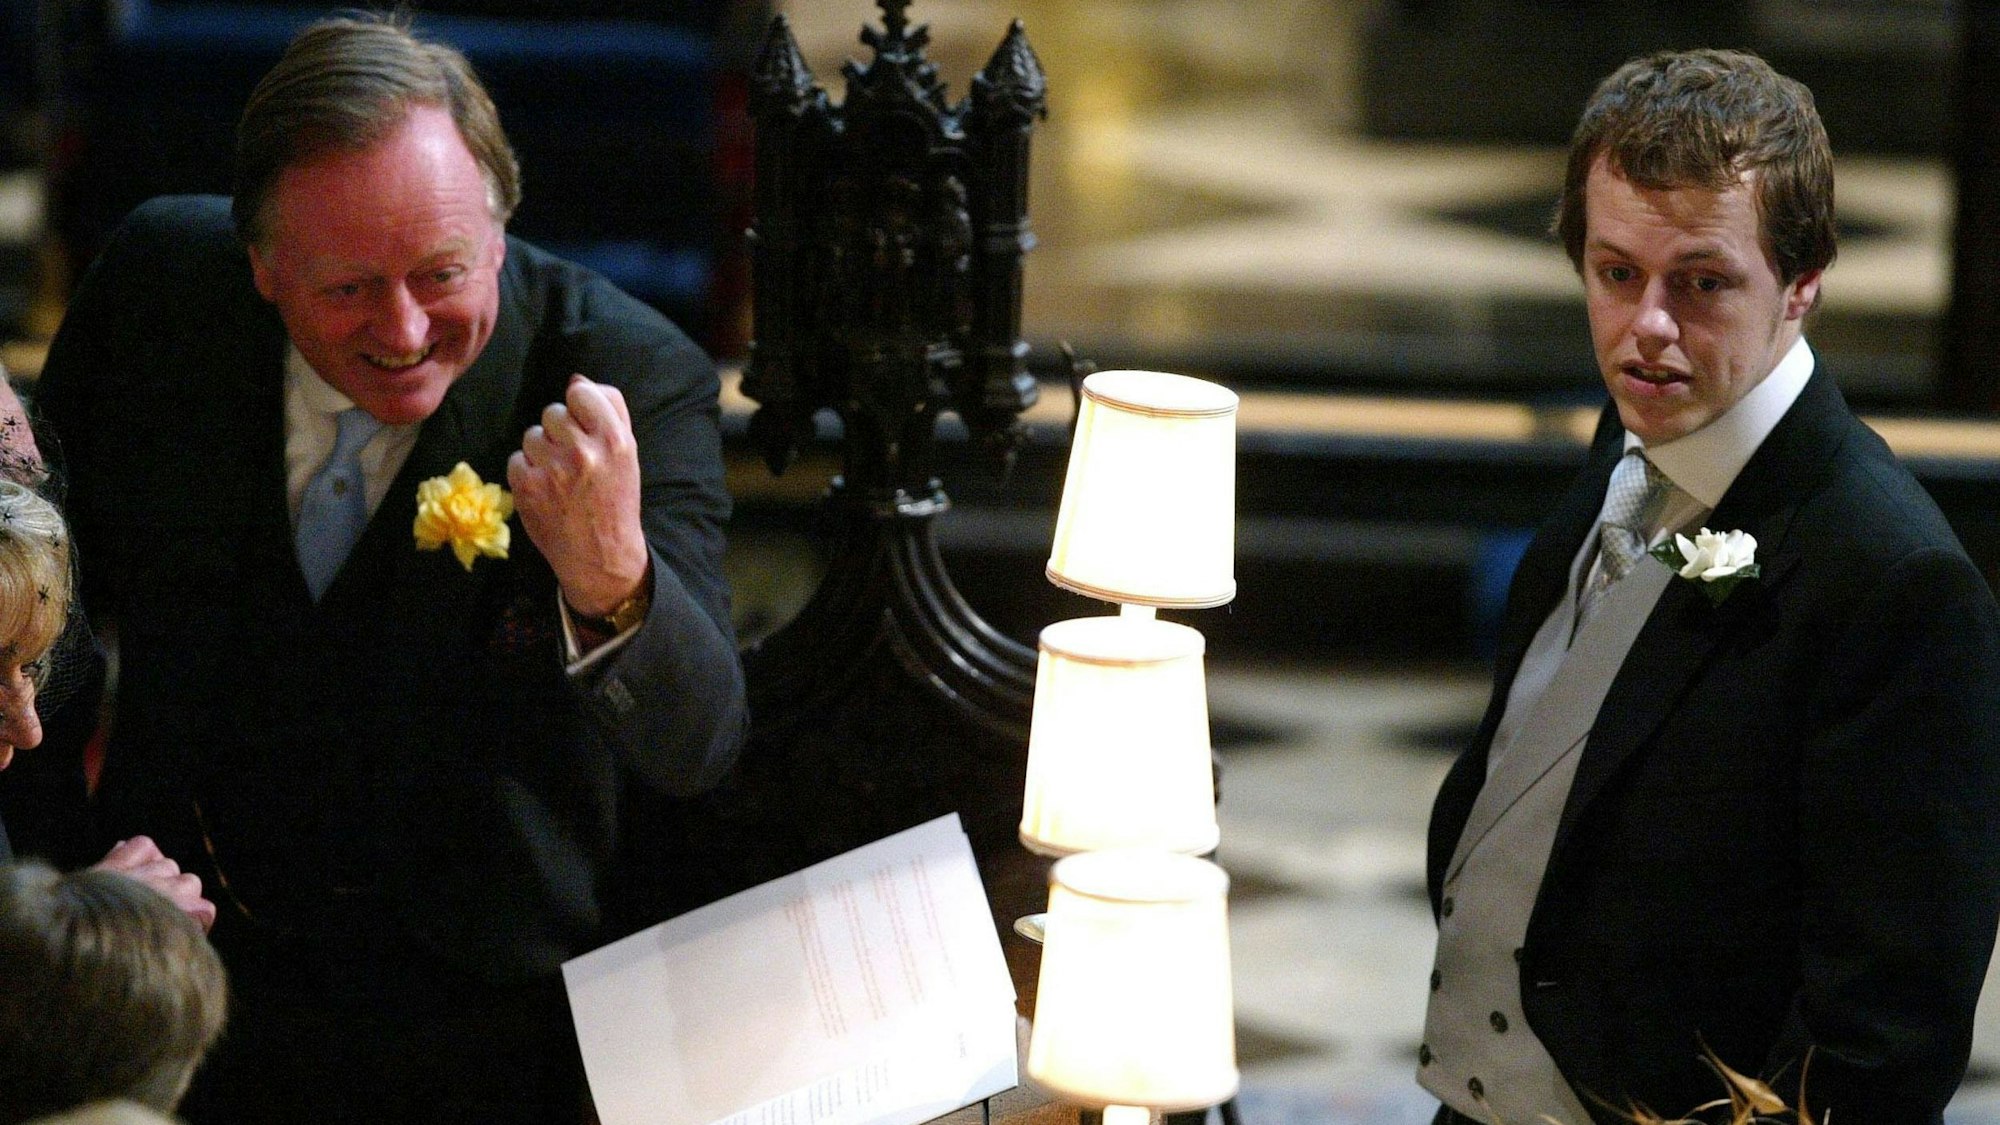 Camillas Ex-Mann Andrew Parker Bowles und sein Sohn Tom am 9. April 2005 in der St. George's Chapel, Windsor Castle, vor dem Gebets- und Widmungsgottesdienst anlässlich der Segnung von Prinz Charles und Camilla, Herzogin von Cornwall.